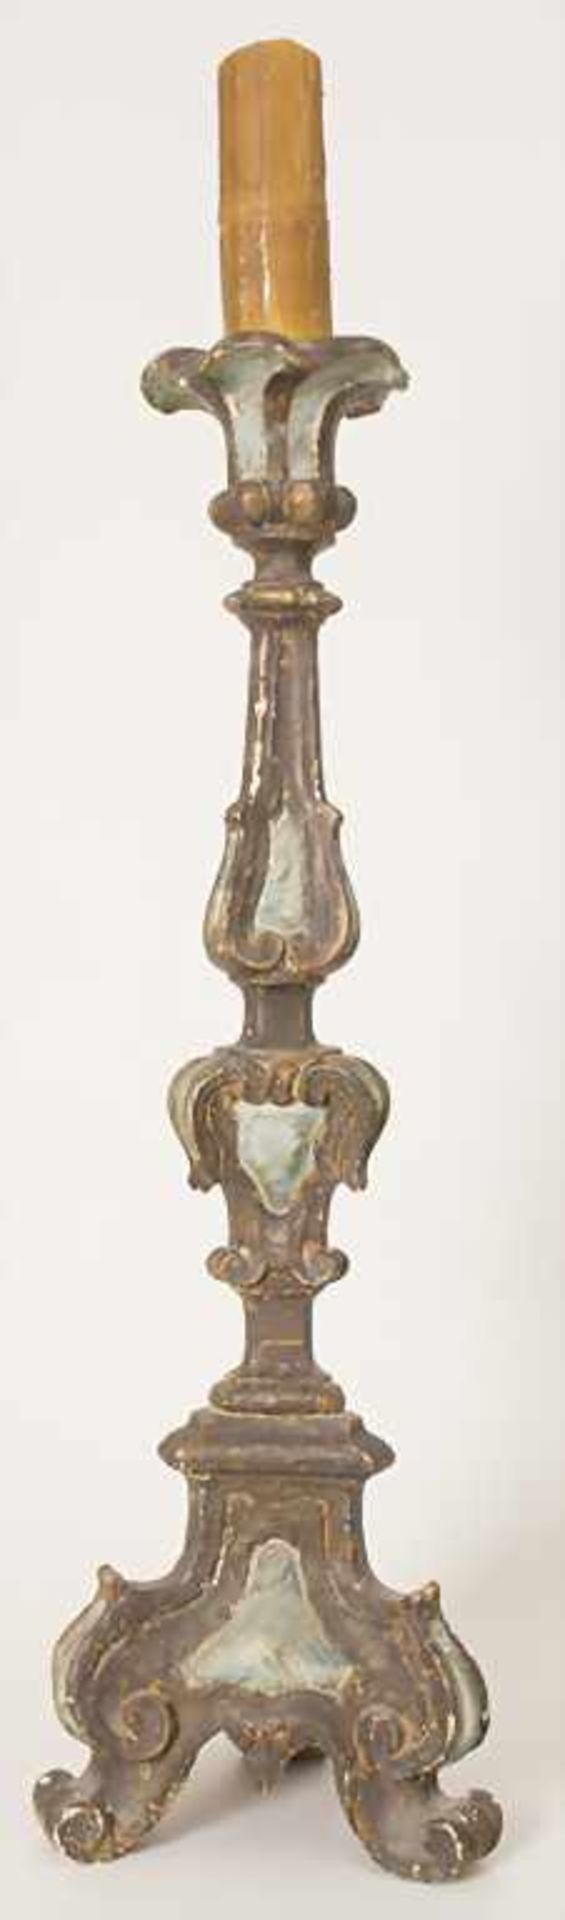 Altarleuchter / An altar candlestick, süddeutsch 18. Jh.Material: Holz, geschnitzt, farbig - Bild 2 aus 13